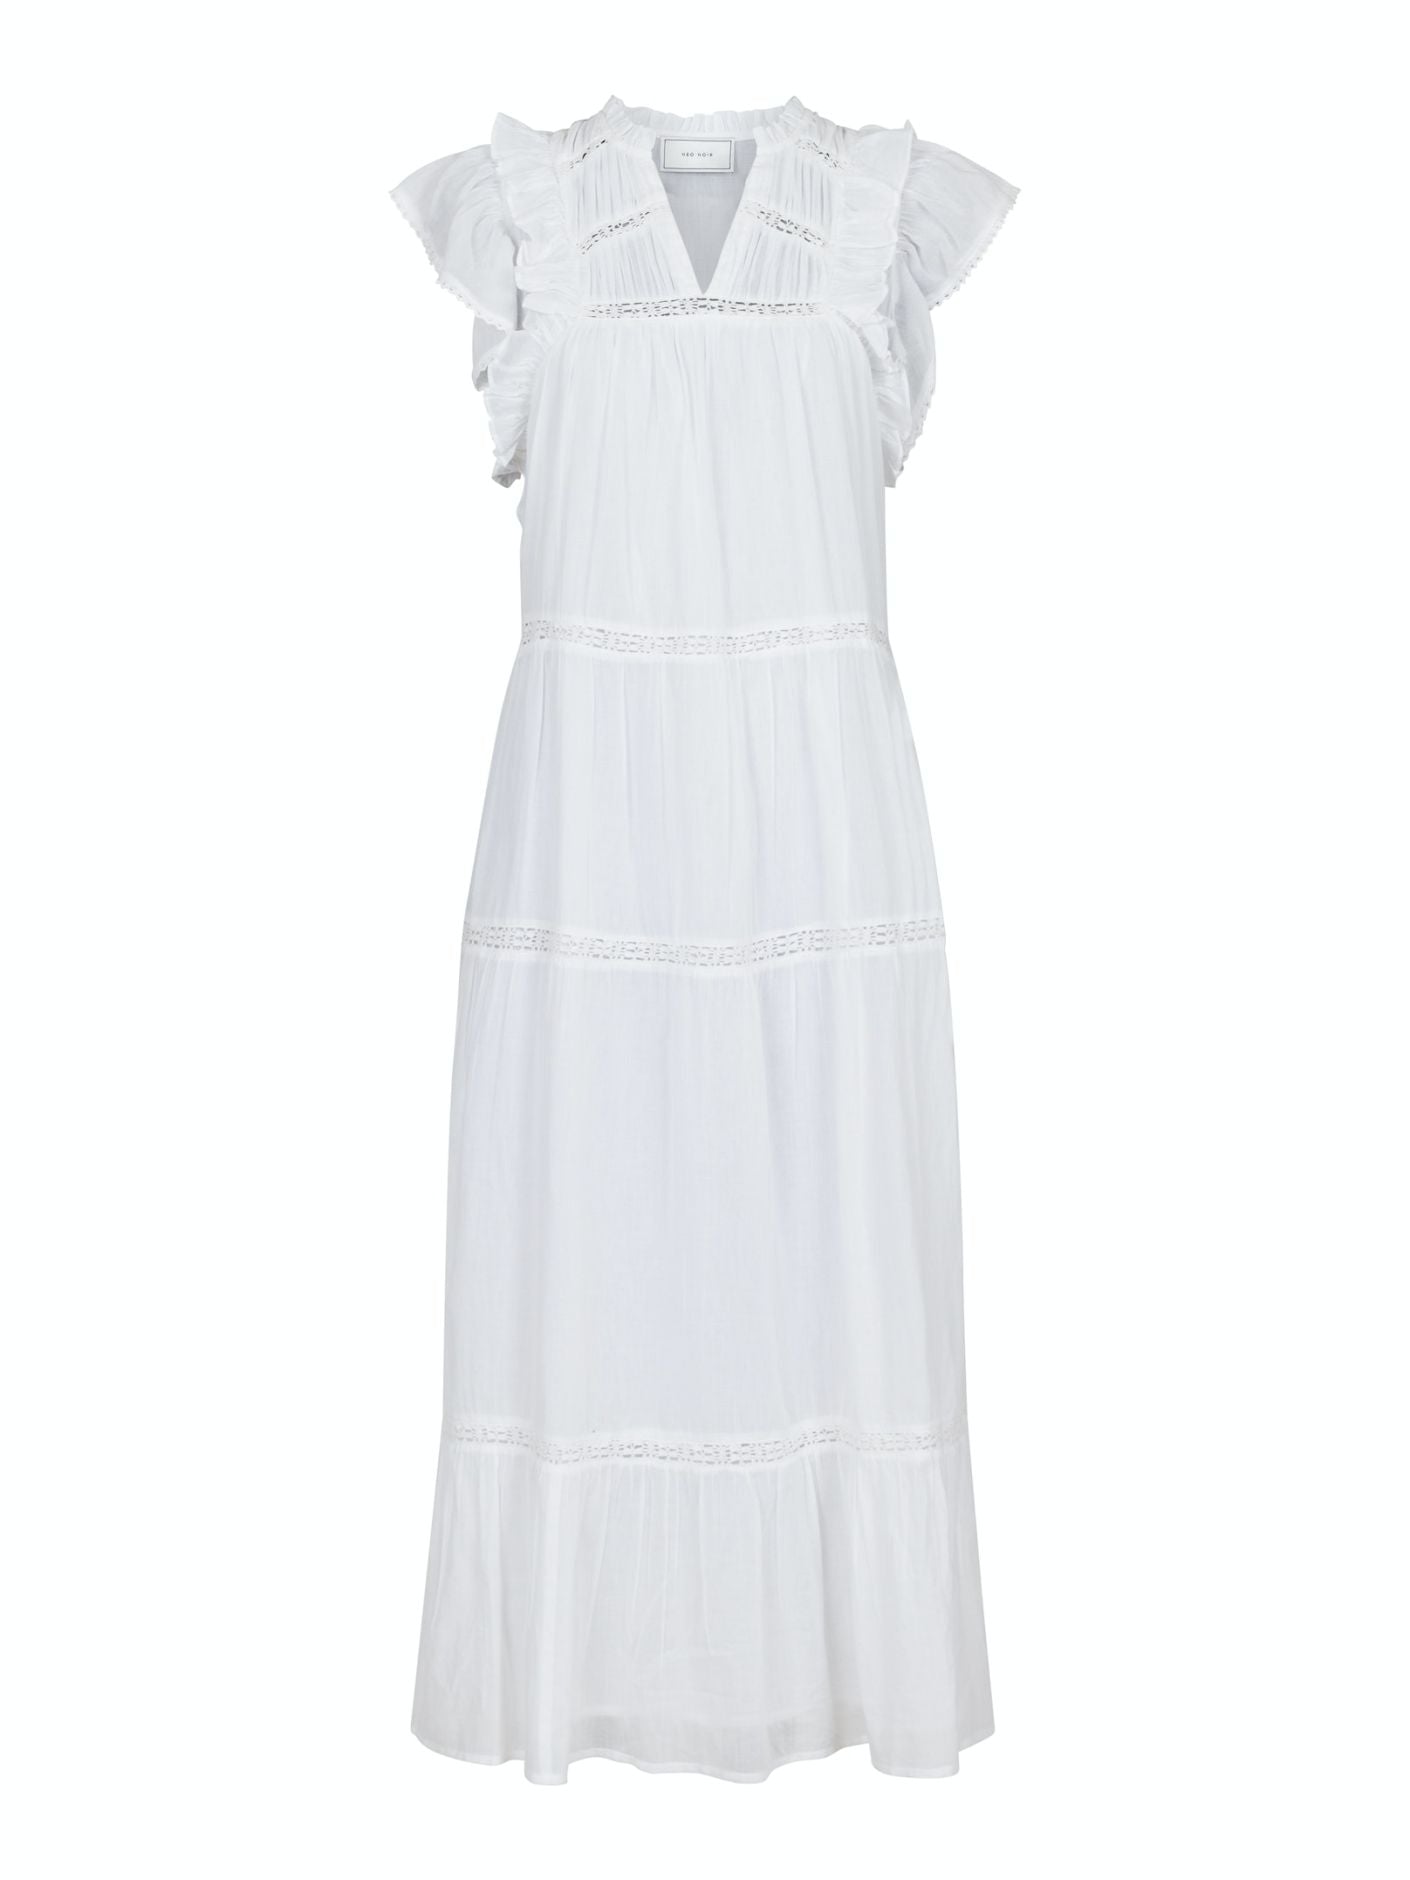 Ankita S Voile Dress White